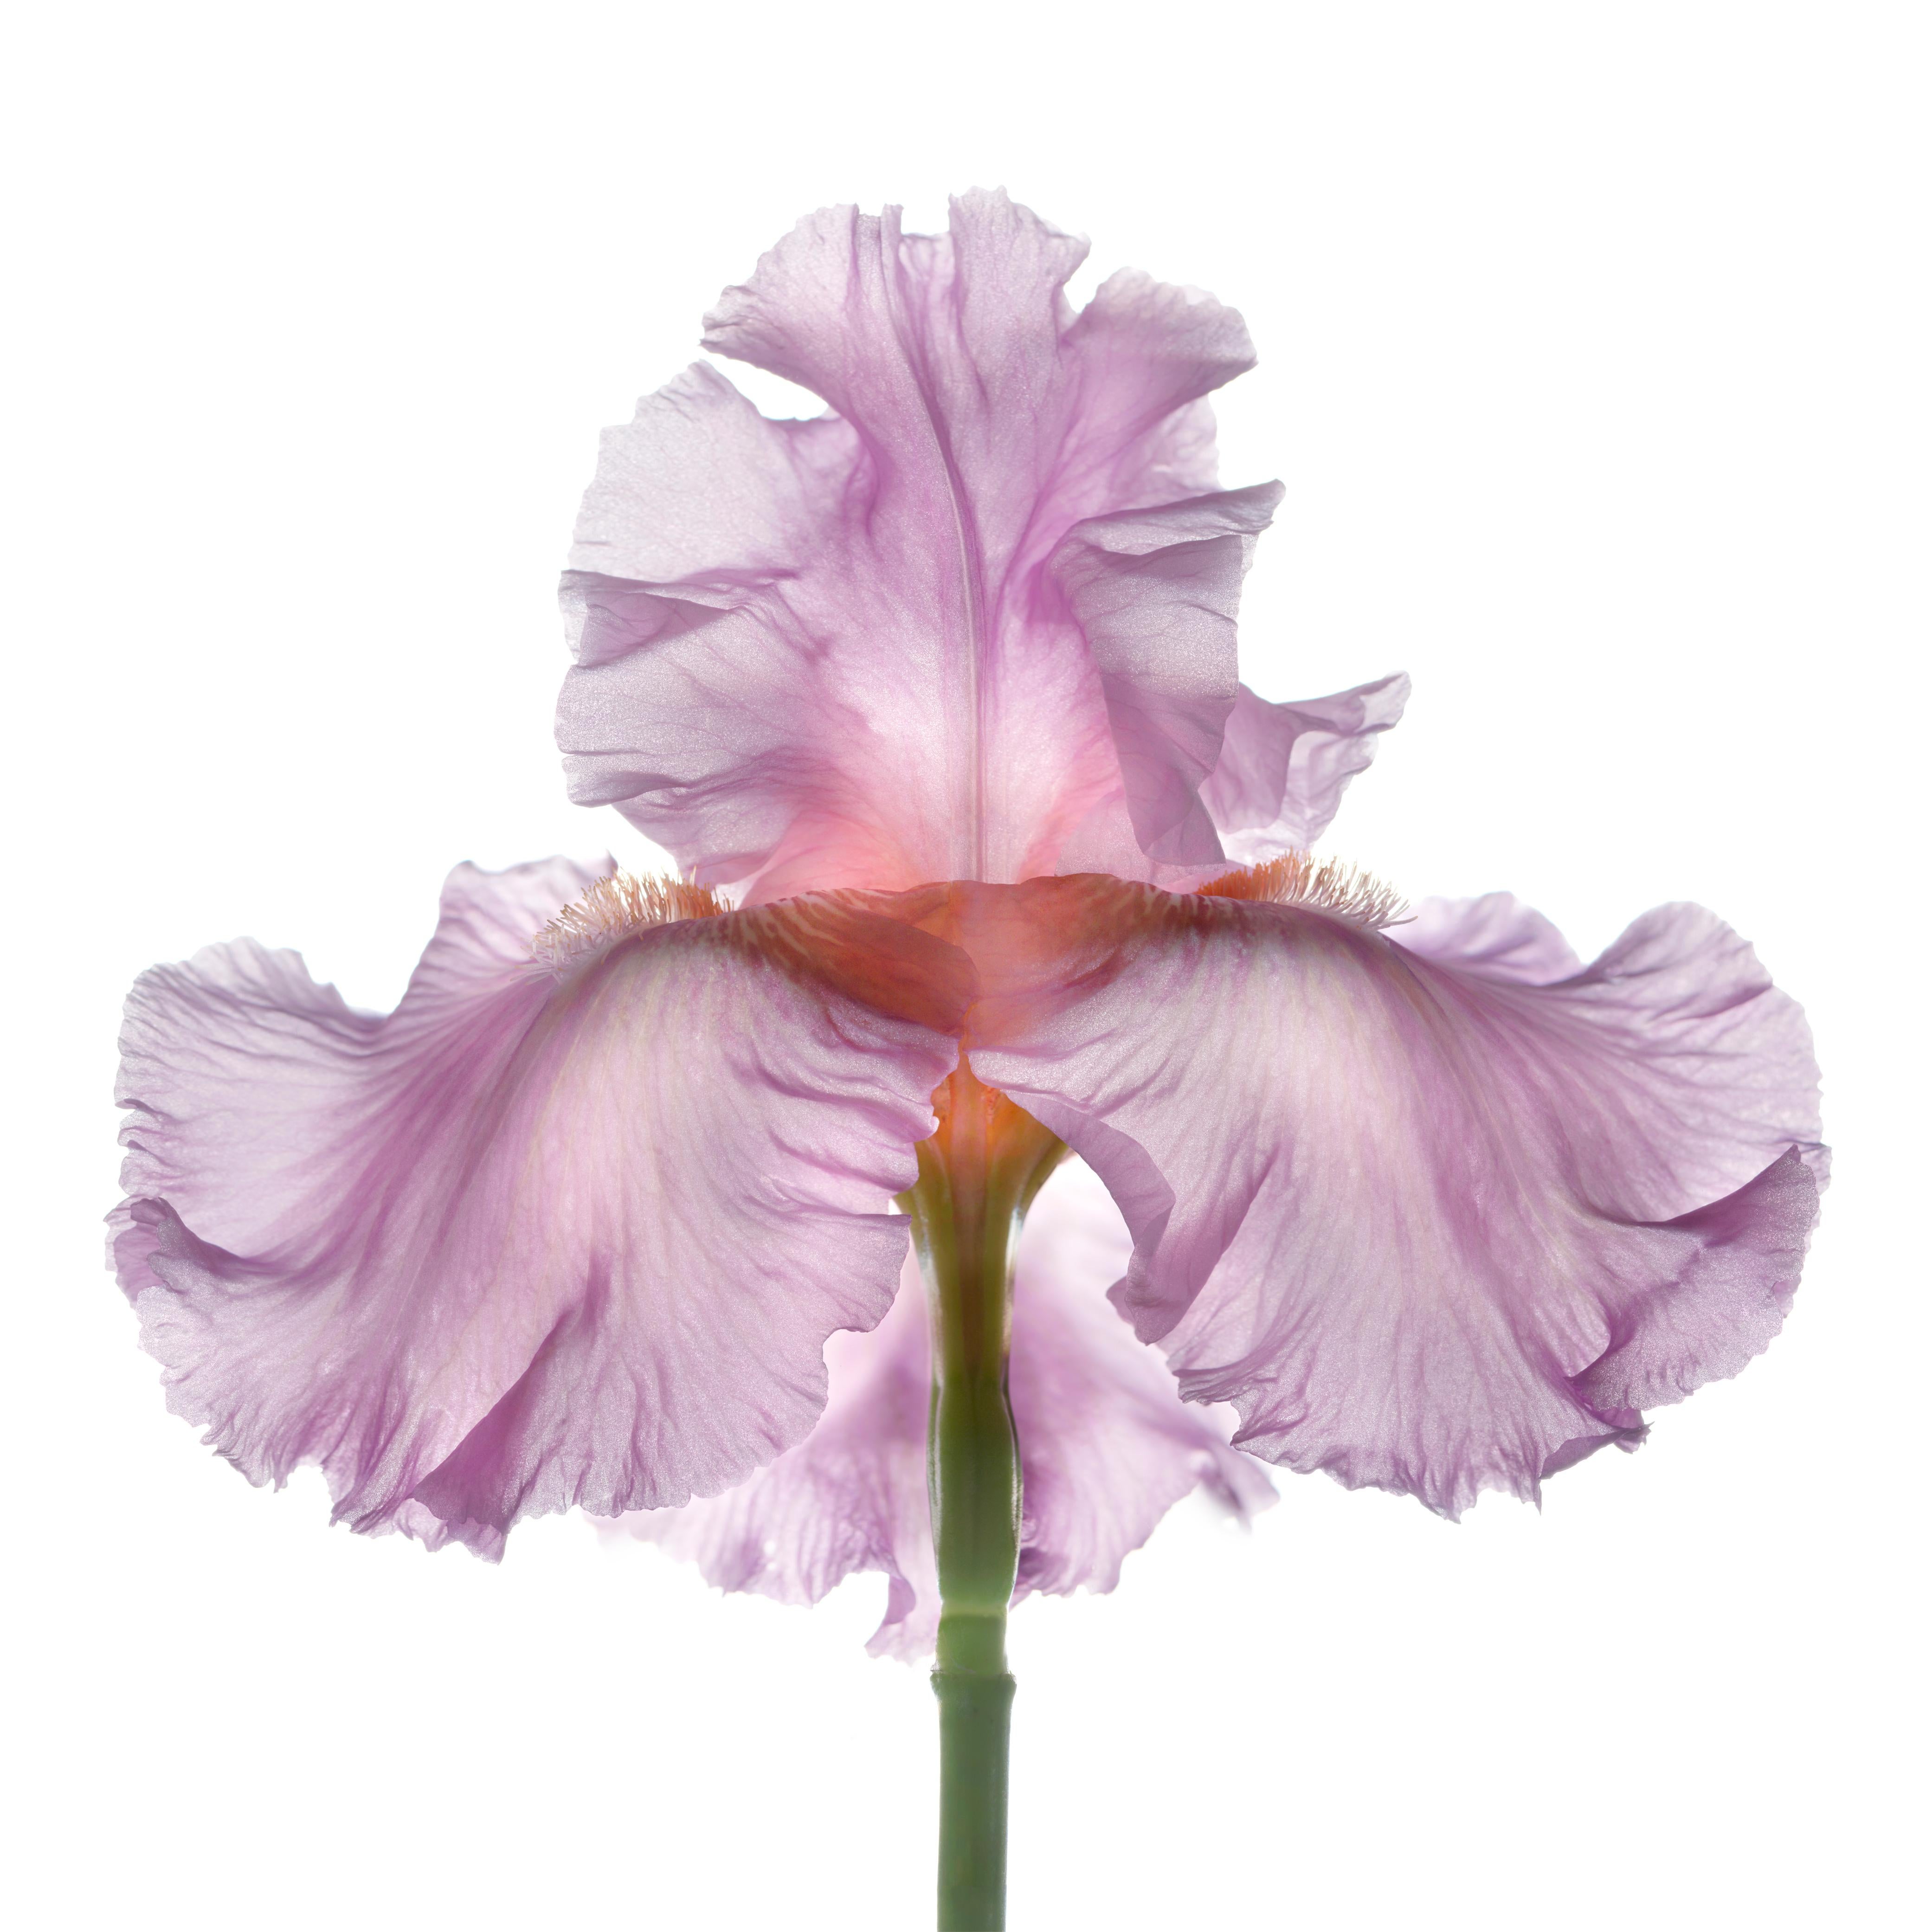 Unbenannte Blume # 70
Hahnemuhle Photo Rag Matte Papier mit Epson Tinte in Archivierungsqualität
Auflage von 25 Stück
Verfügbare Größen:
11" x 14"
20" x 24"
30" x 30"
30" x 40"
40" x 40"
48" x 48"
48" x 60"
60" x 60"

Seit 1997 benutze ich einen